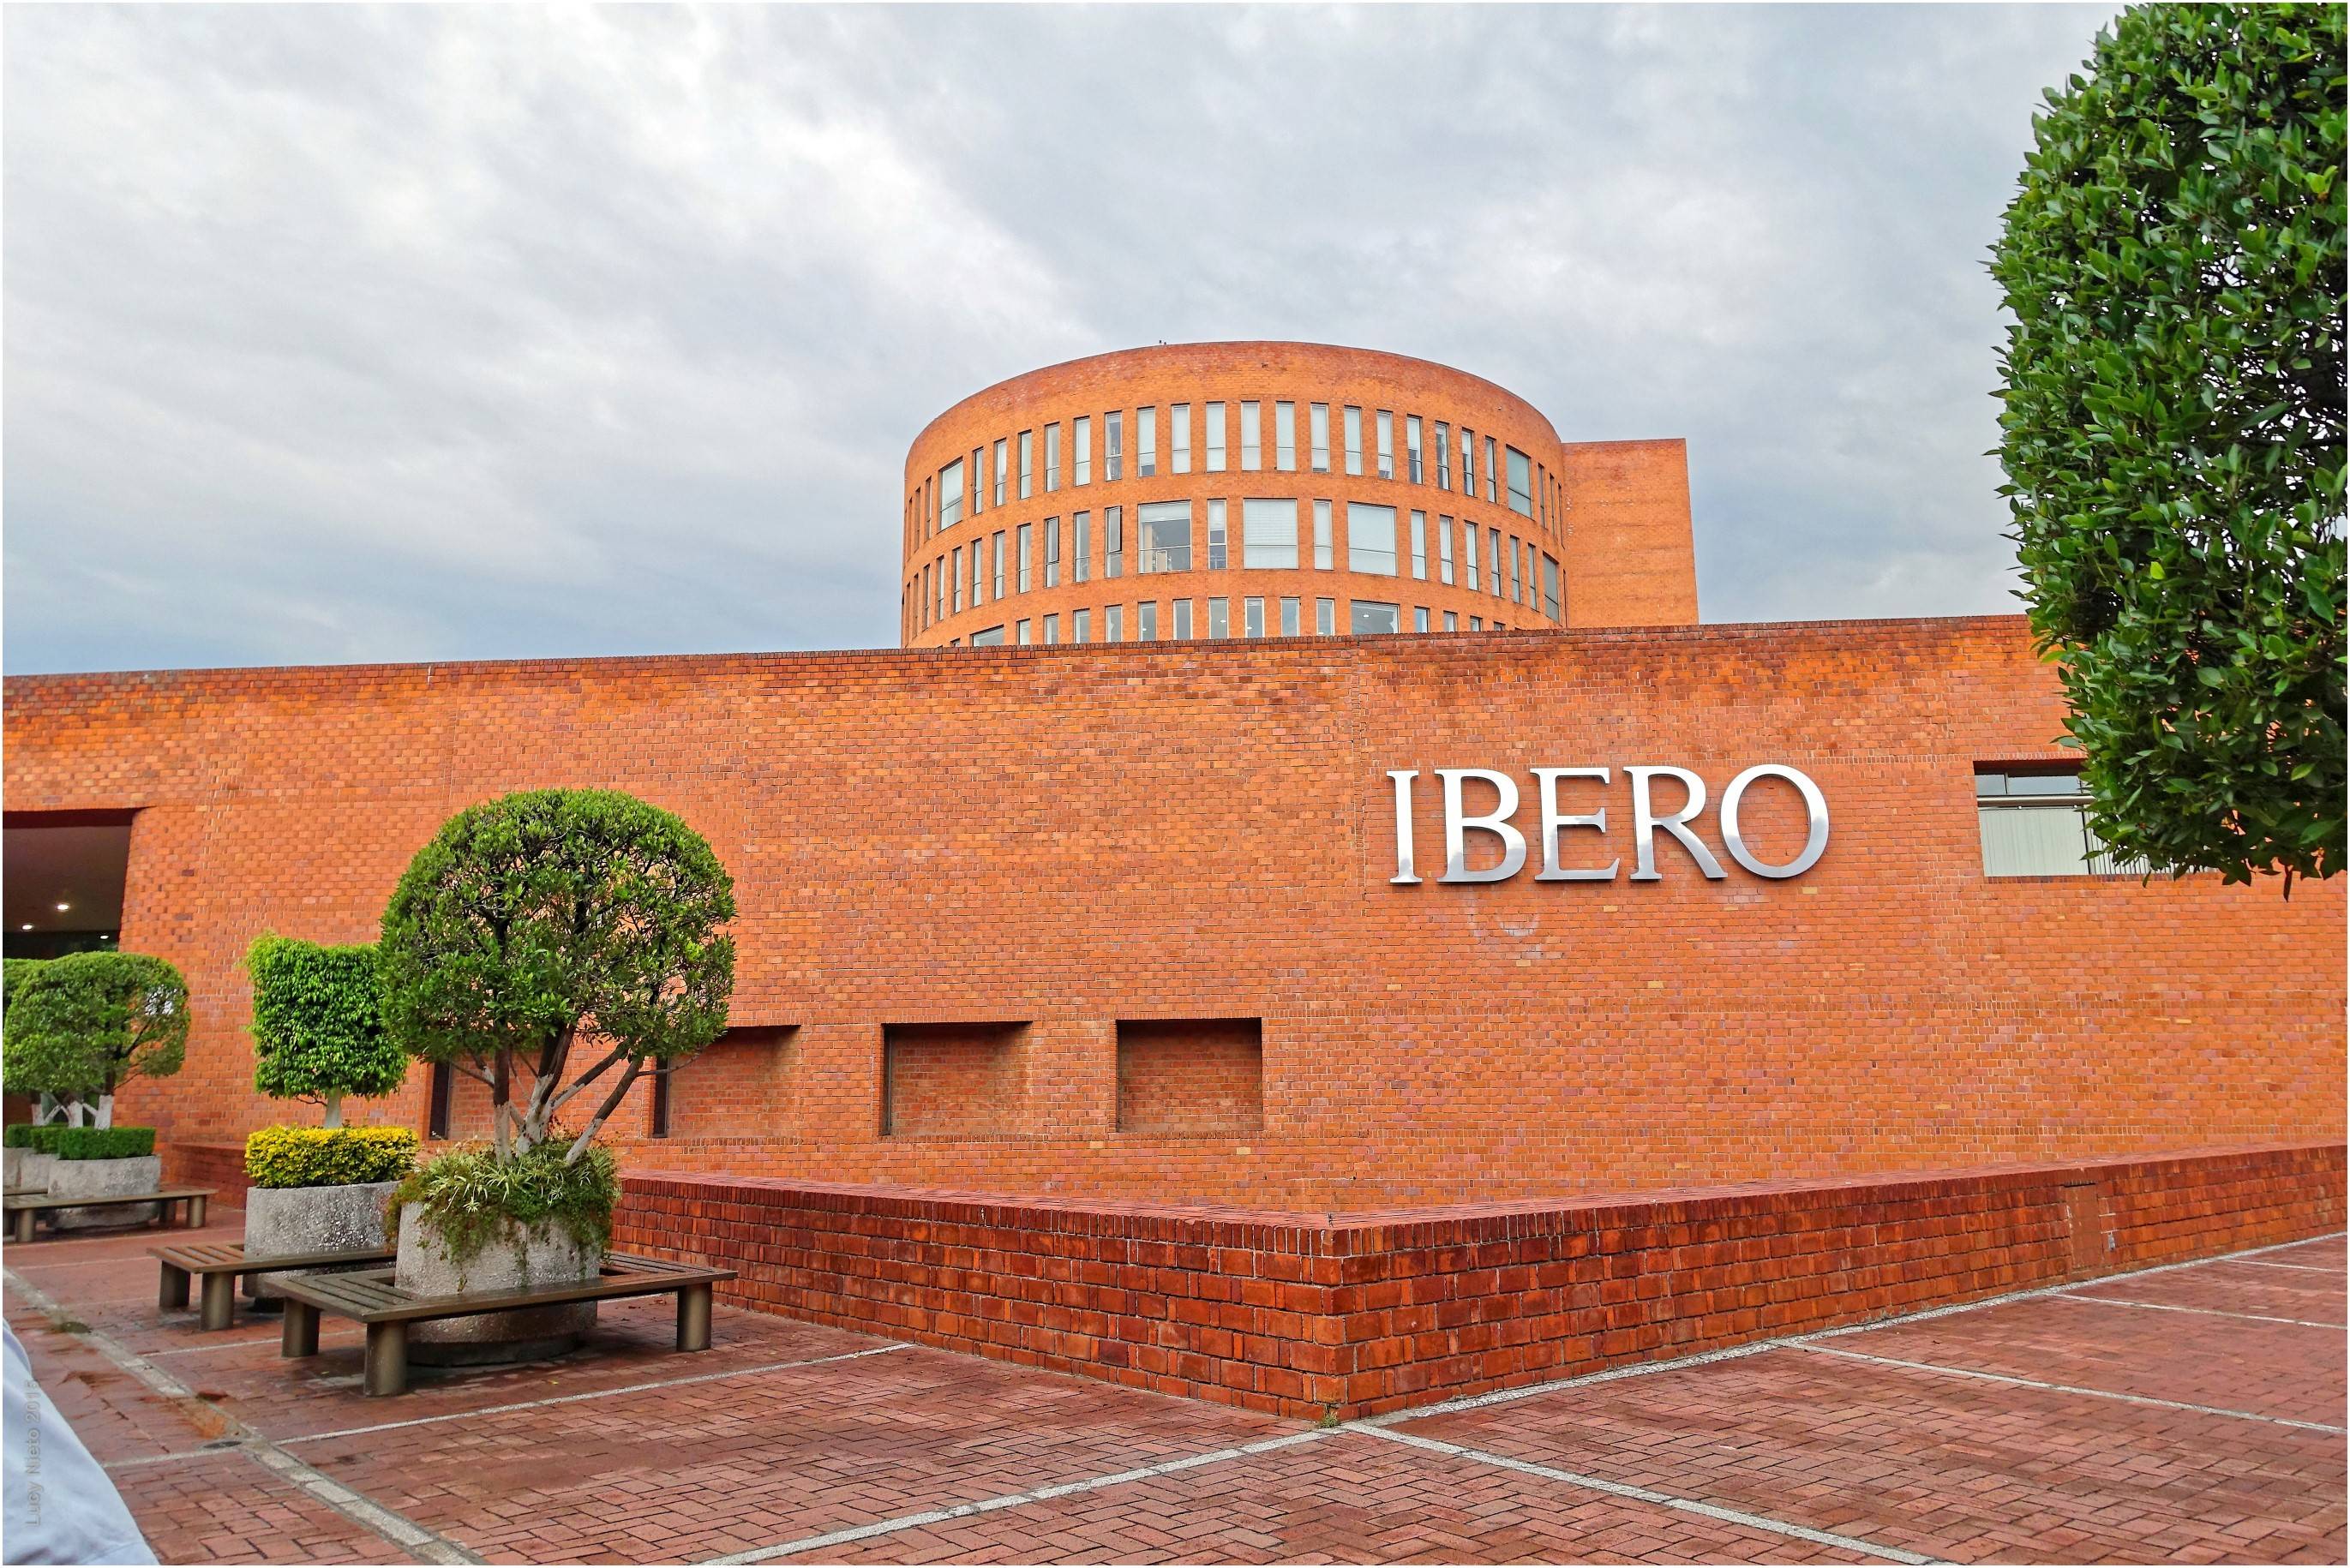 Ibero campus